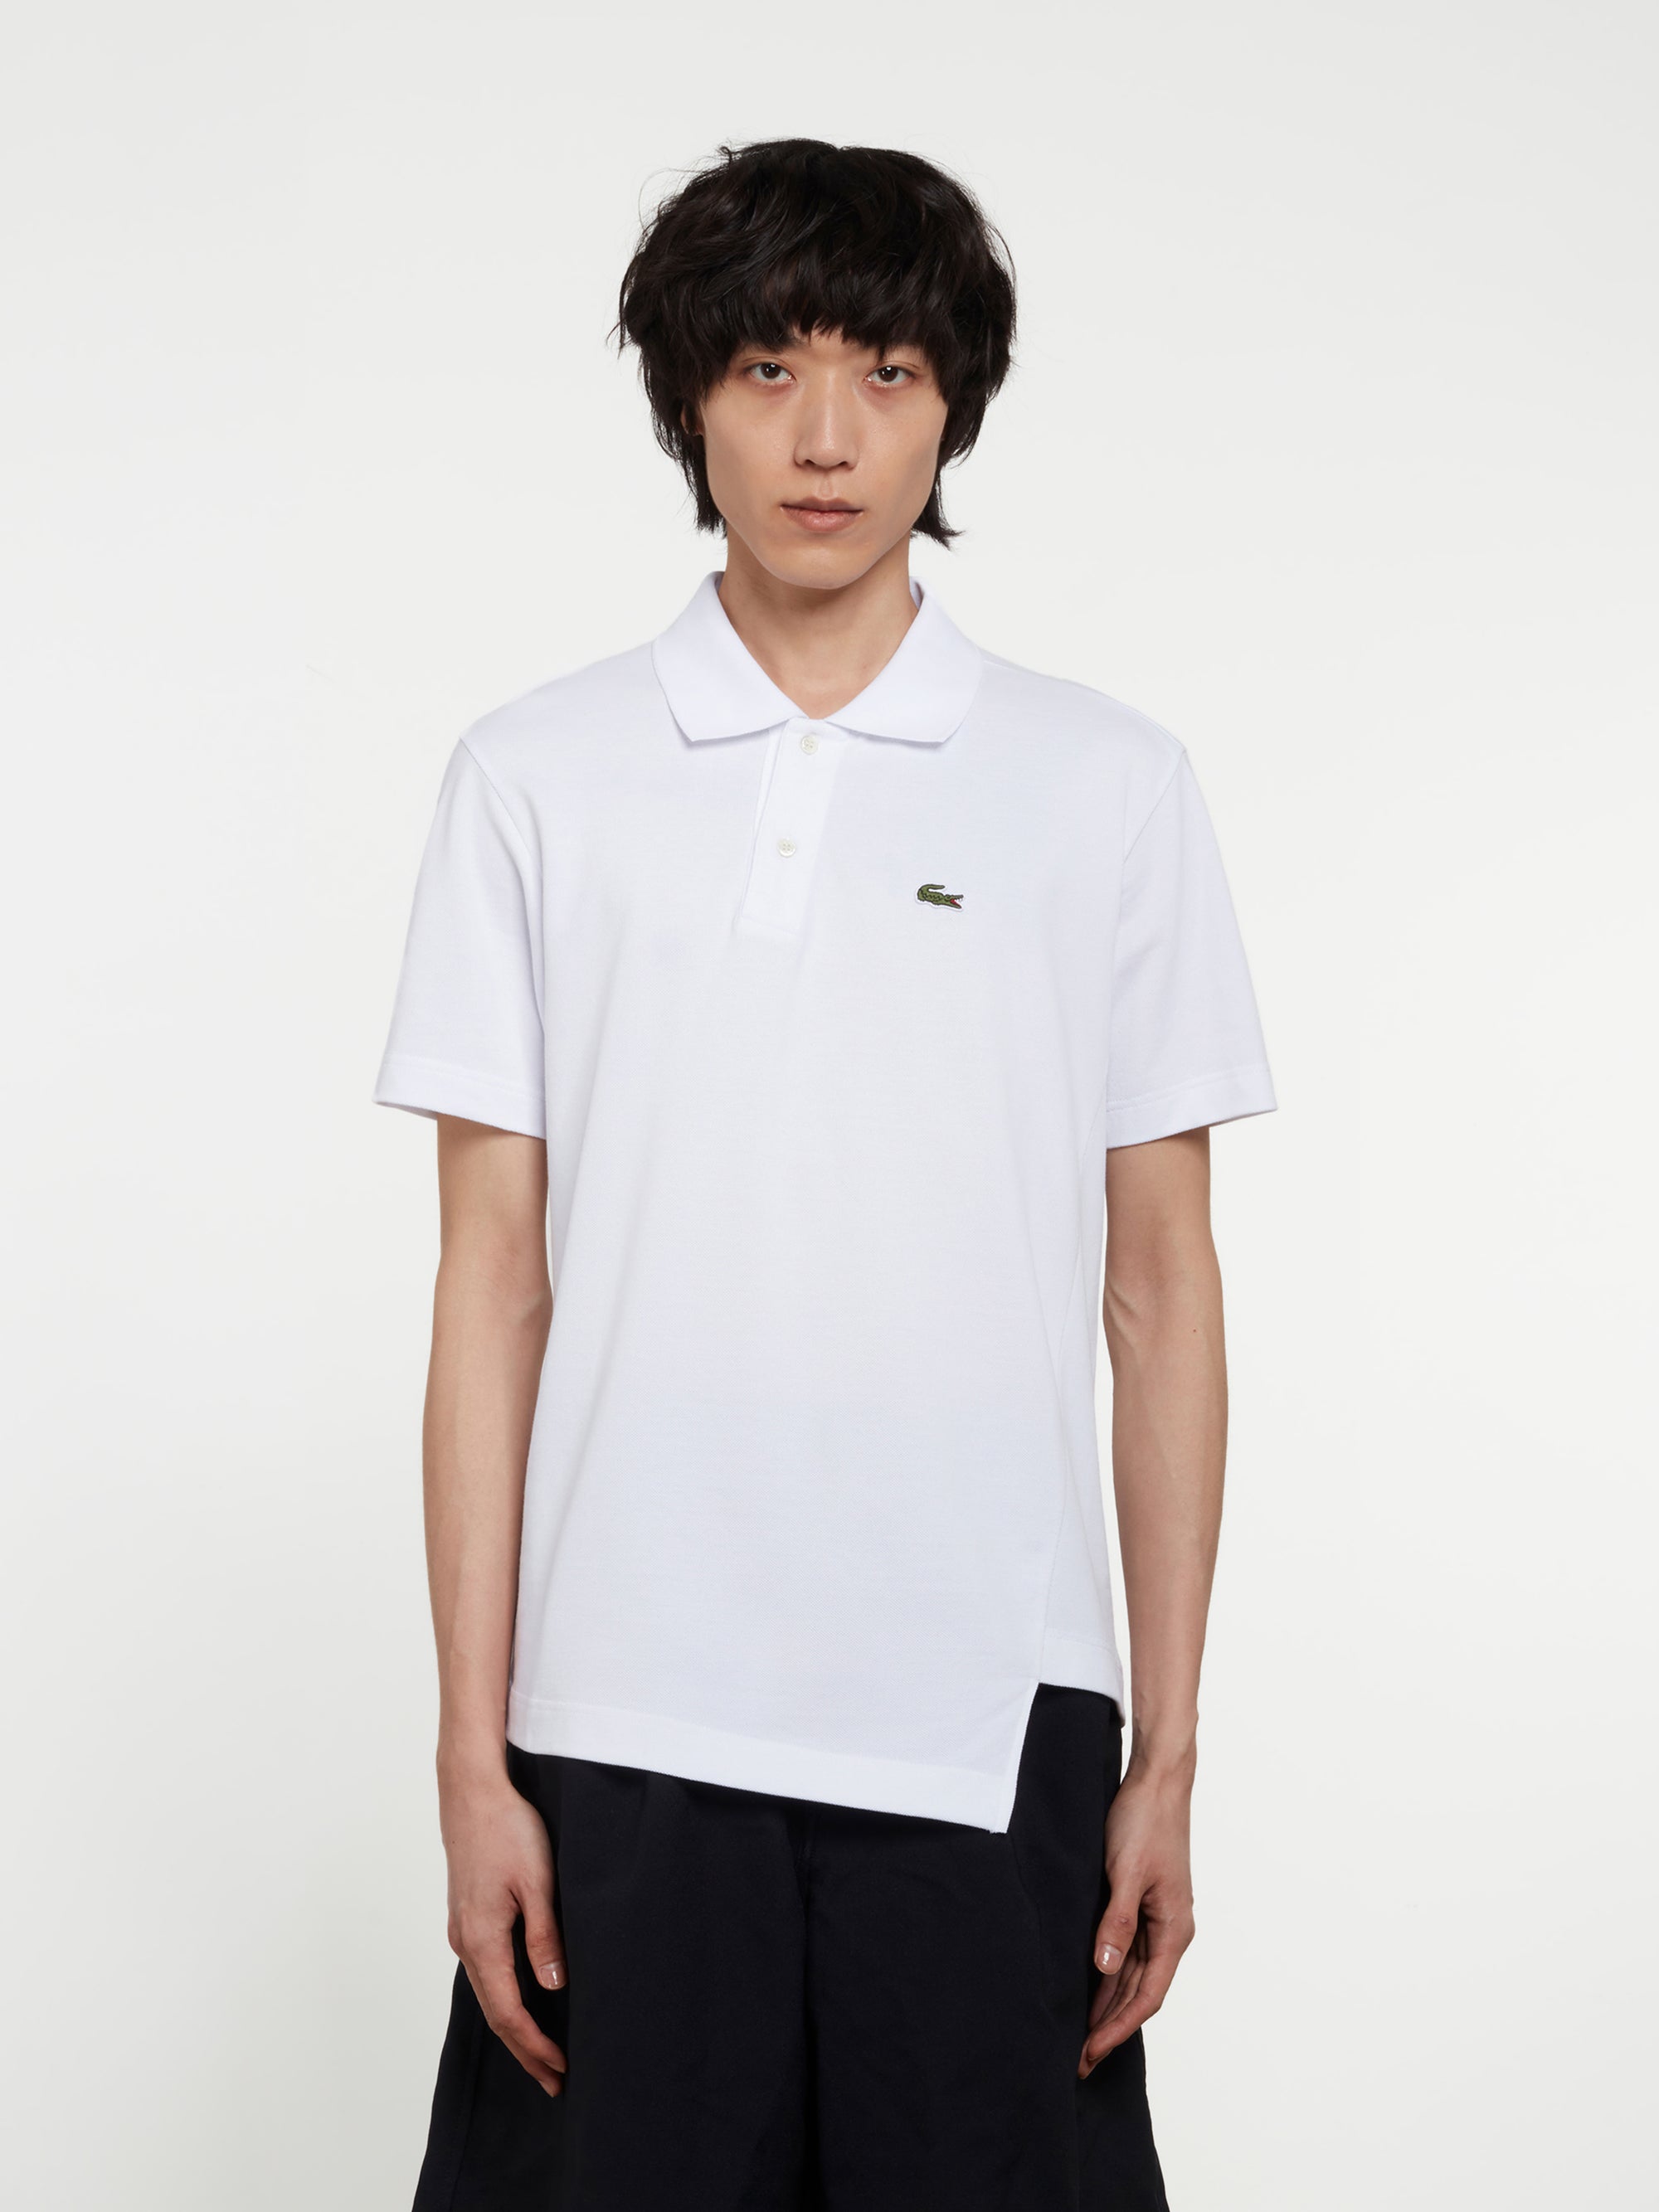 CDG Shirt - Lacoste Men's Asymmetric Polo Shirt - (White) view 1